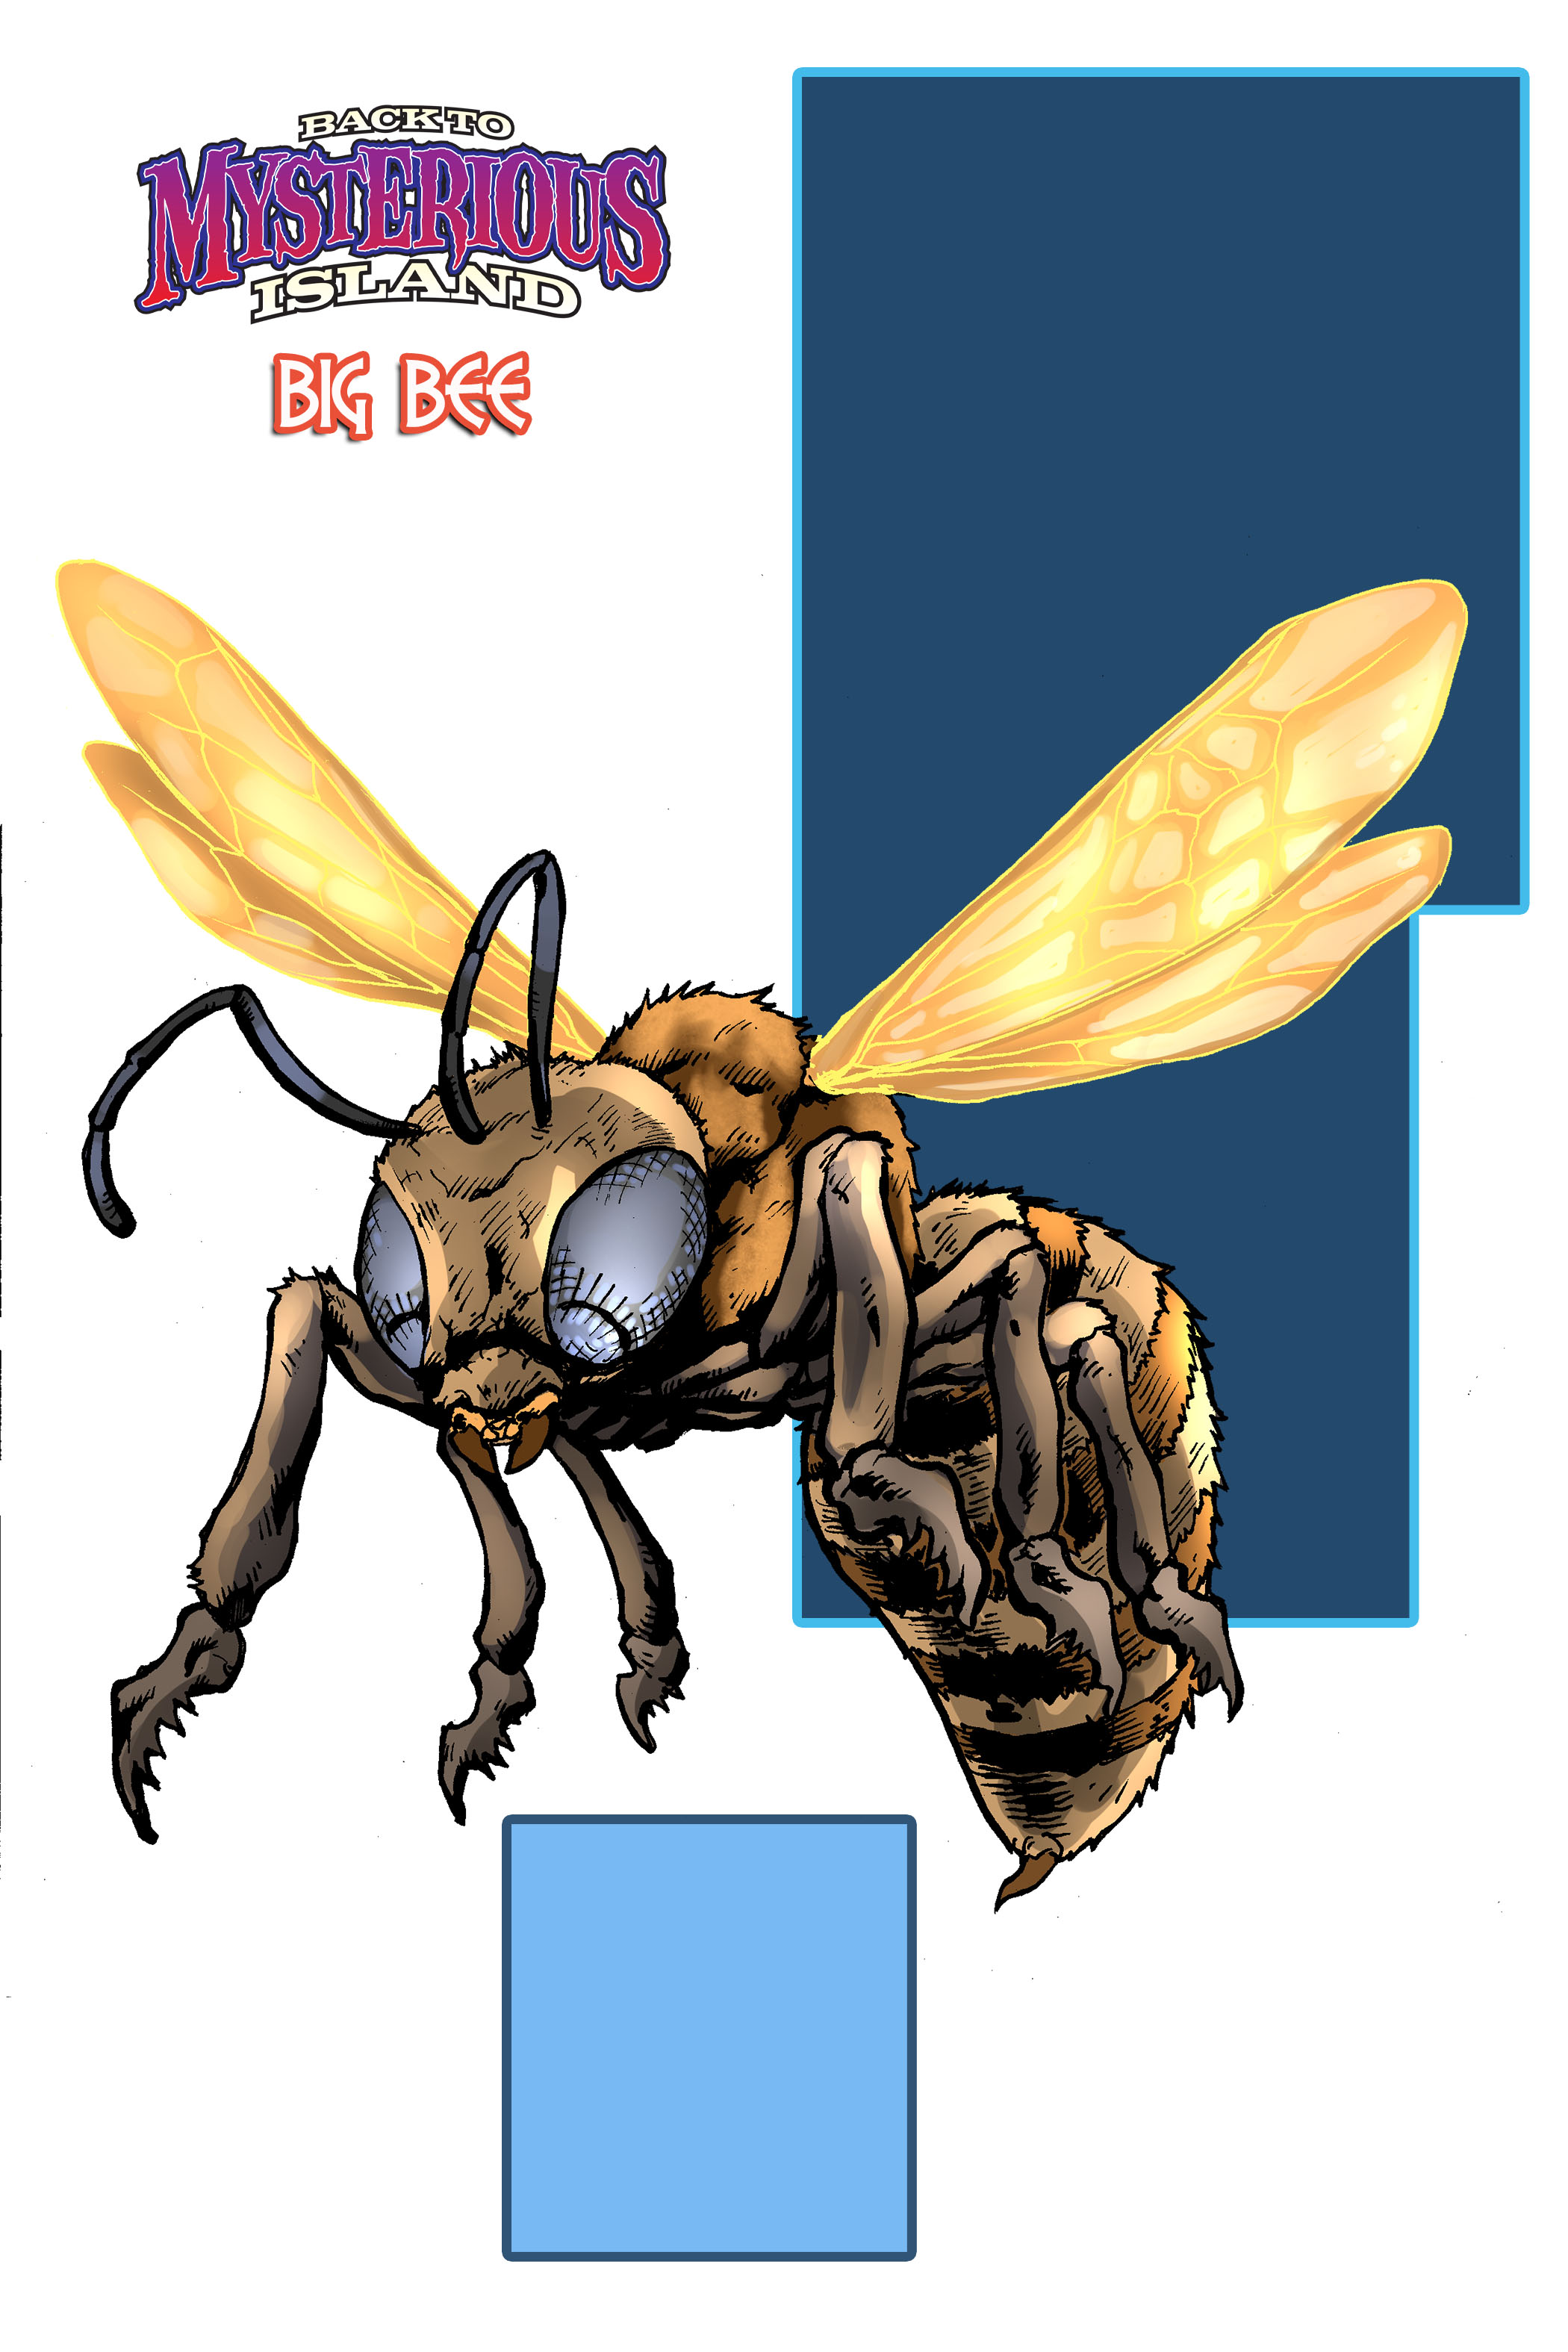 TidalWave: World of Harryhausen: BIG BEE!